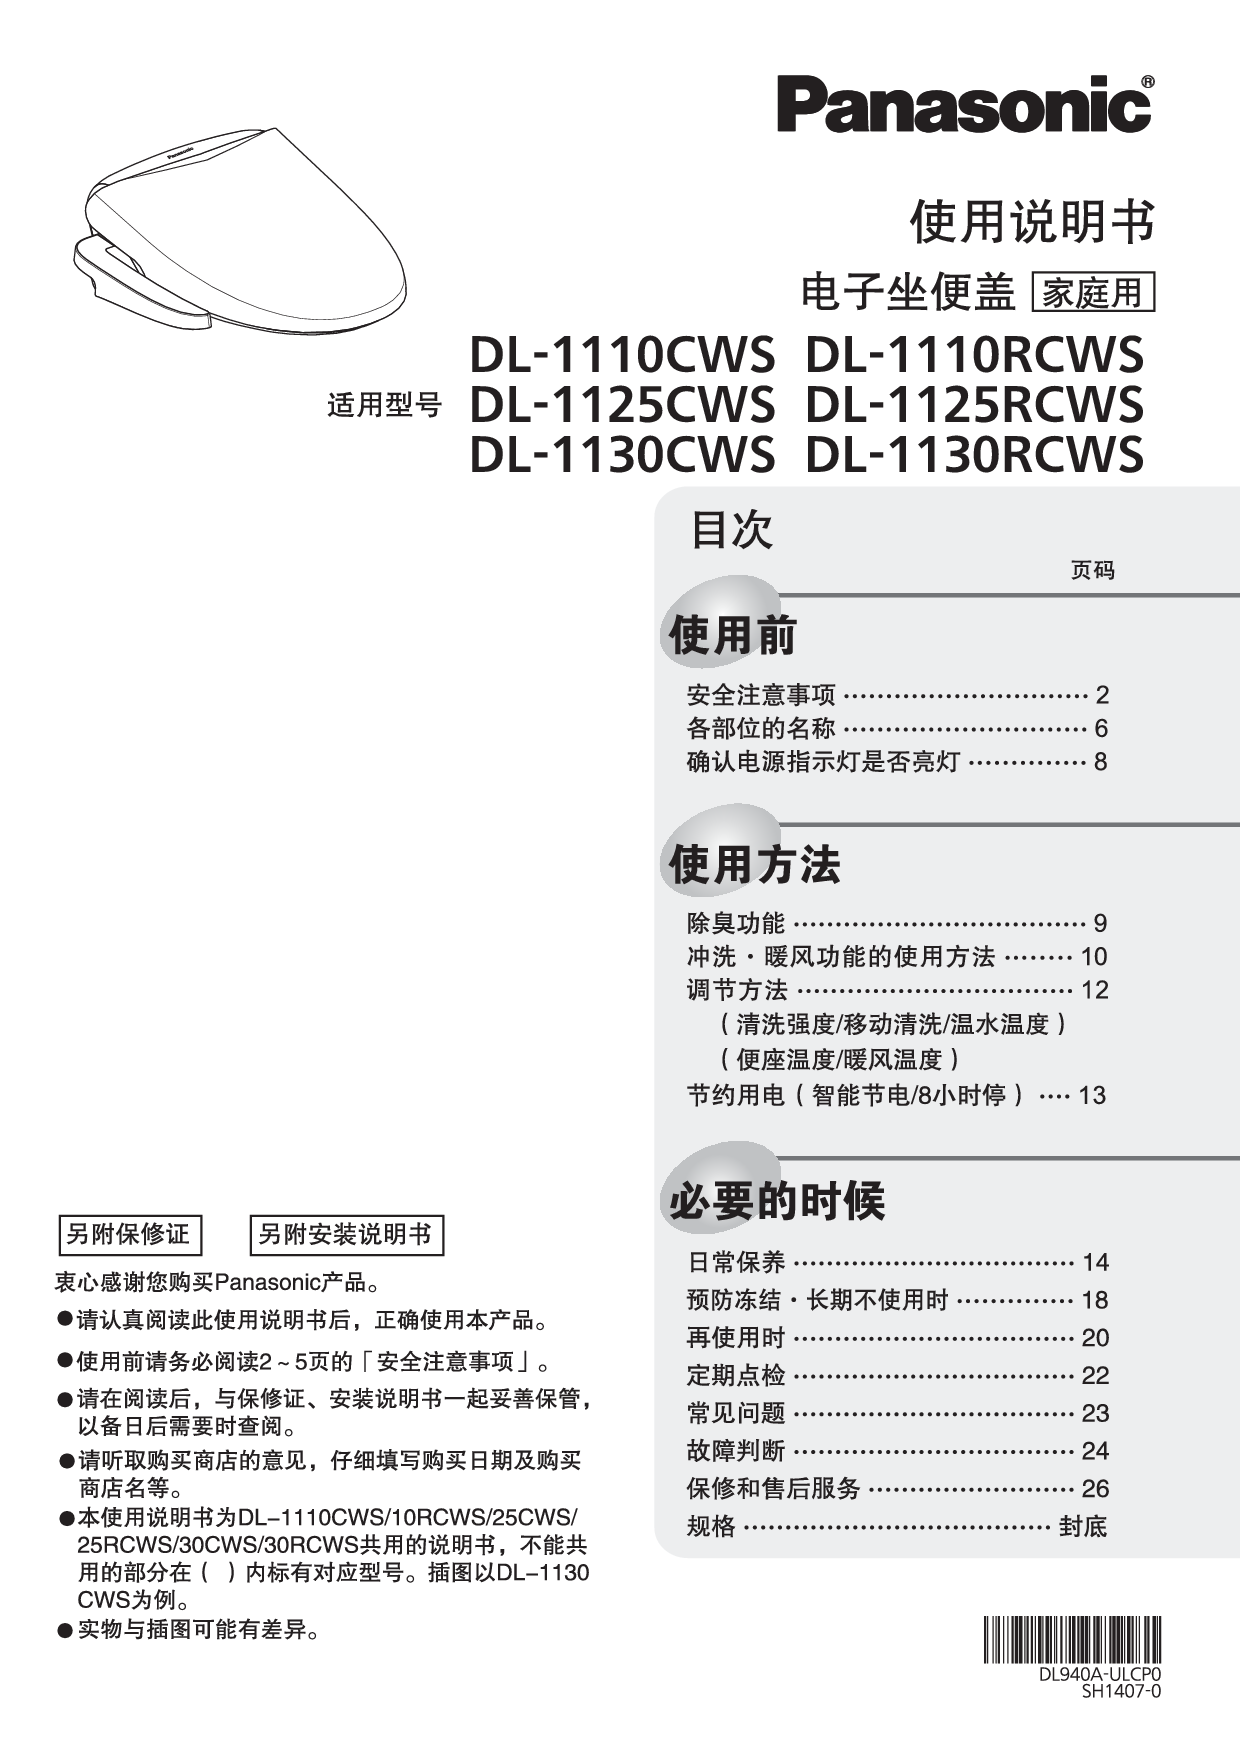 松下 Panasonic DL-1110CWS 使用说明书 封面